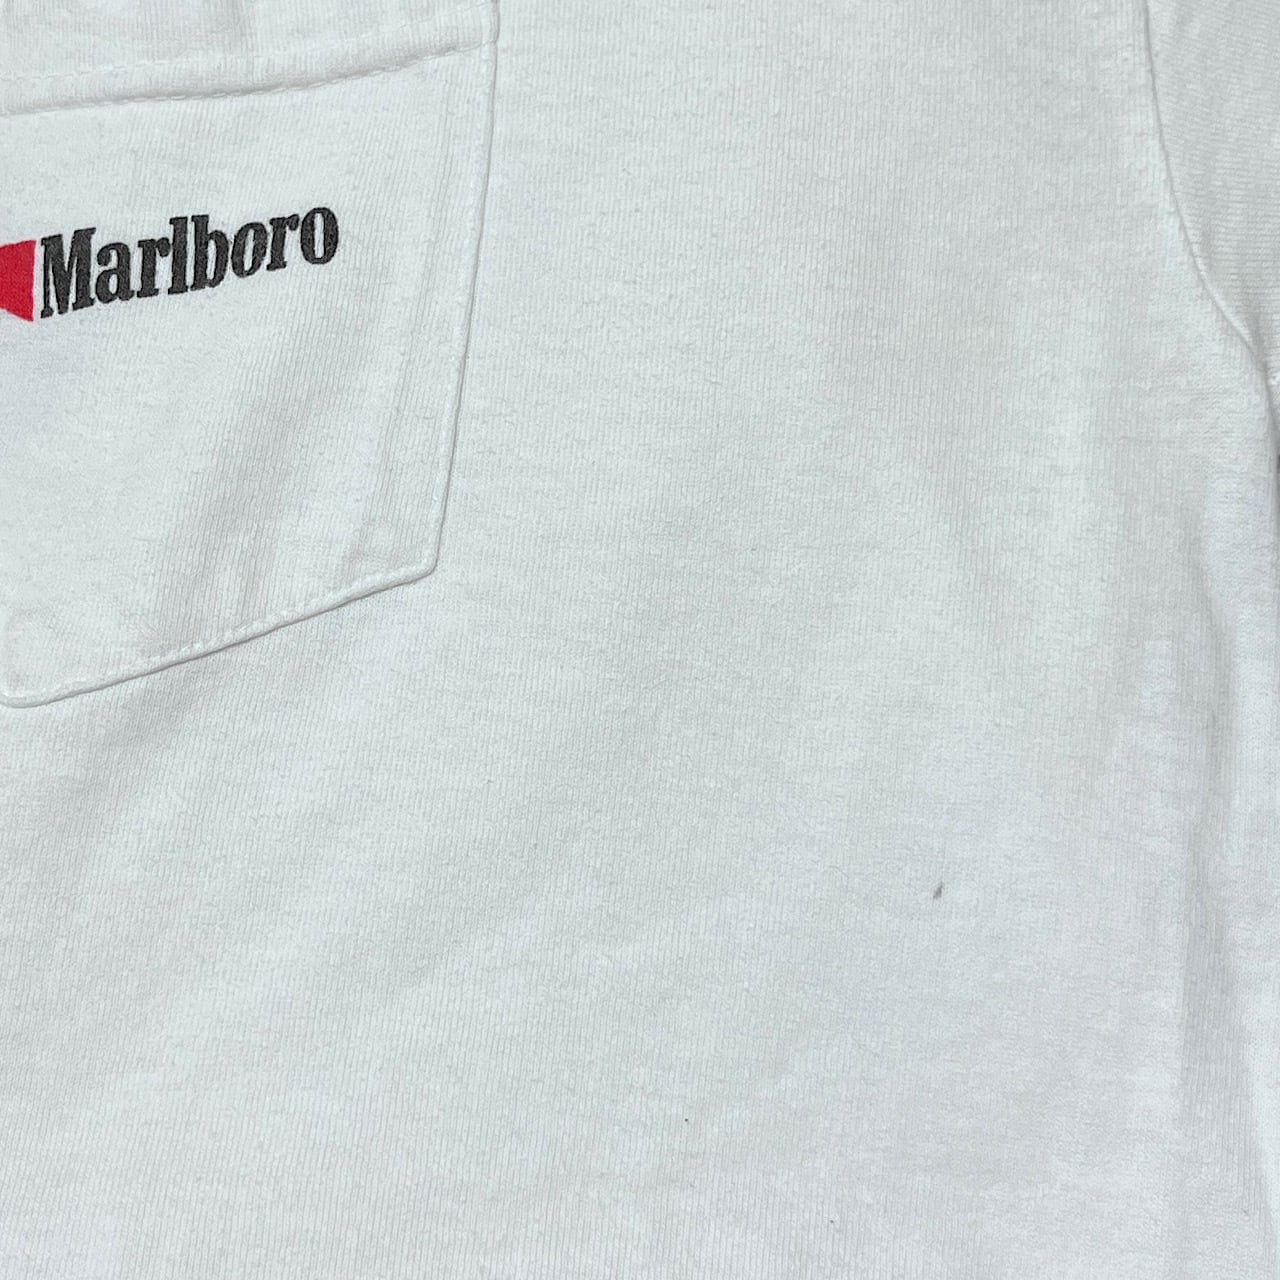 90年代 Marlboro マルボロ カウボーイ 企業ロゴ 胸ポケット バック ...